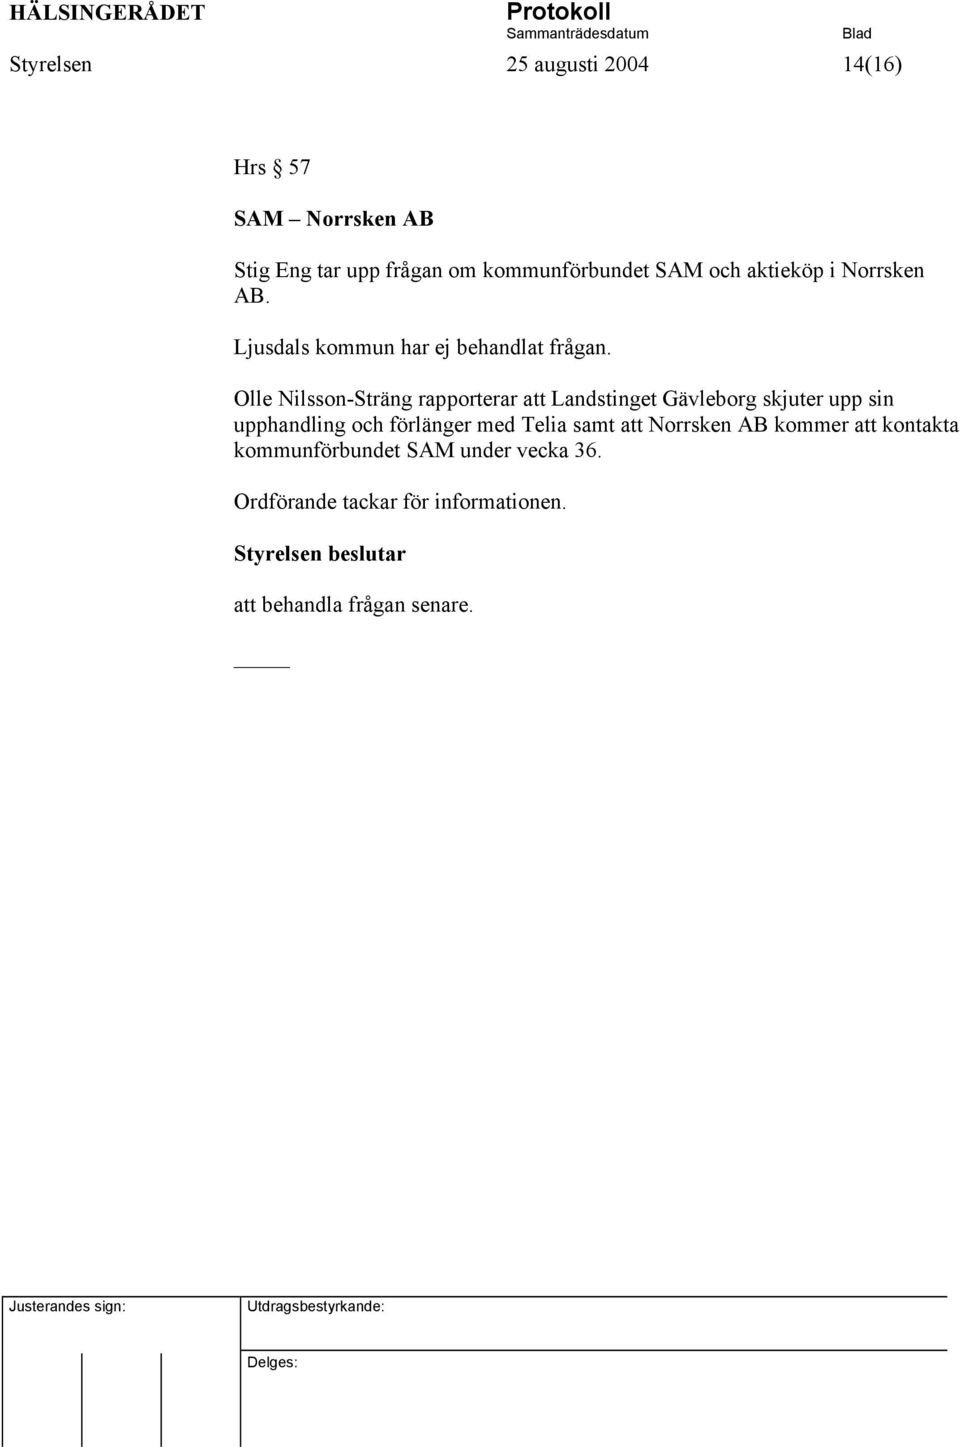 Olle Nilsson-Sträng rapporterar att Landstinget Gävleborg skjuter upp sin upphandling och förlänger med